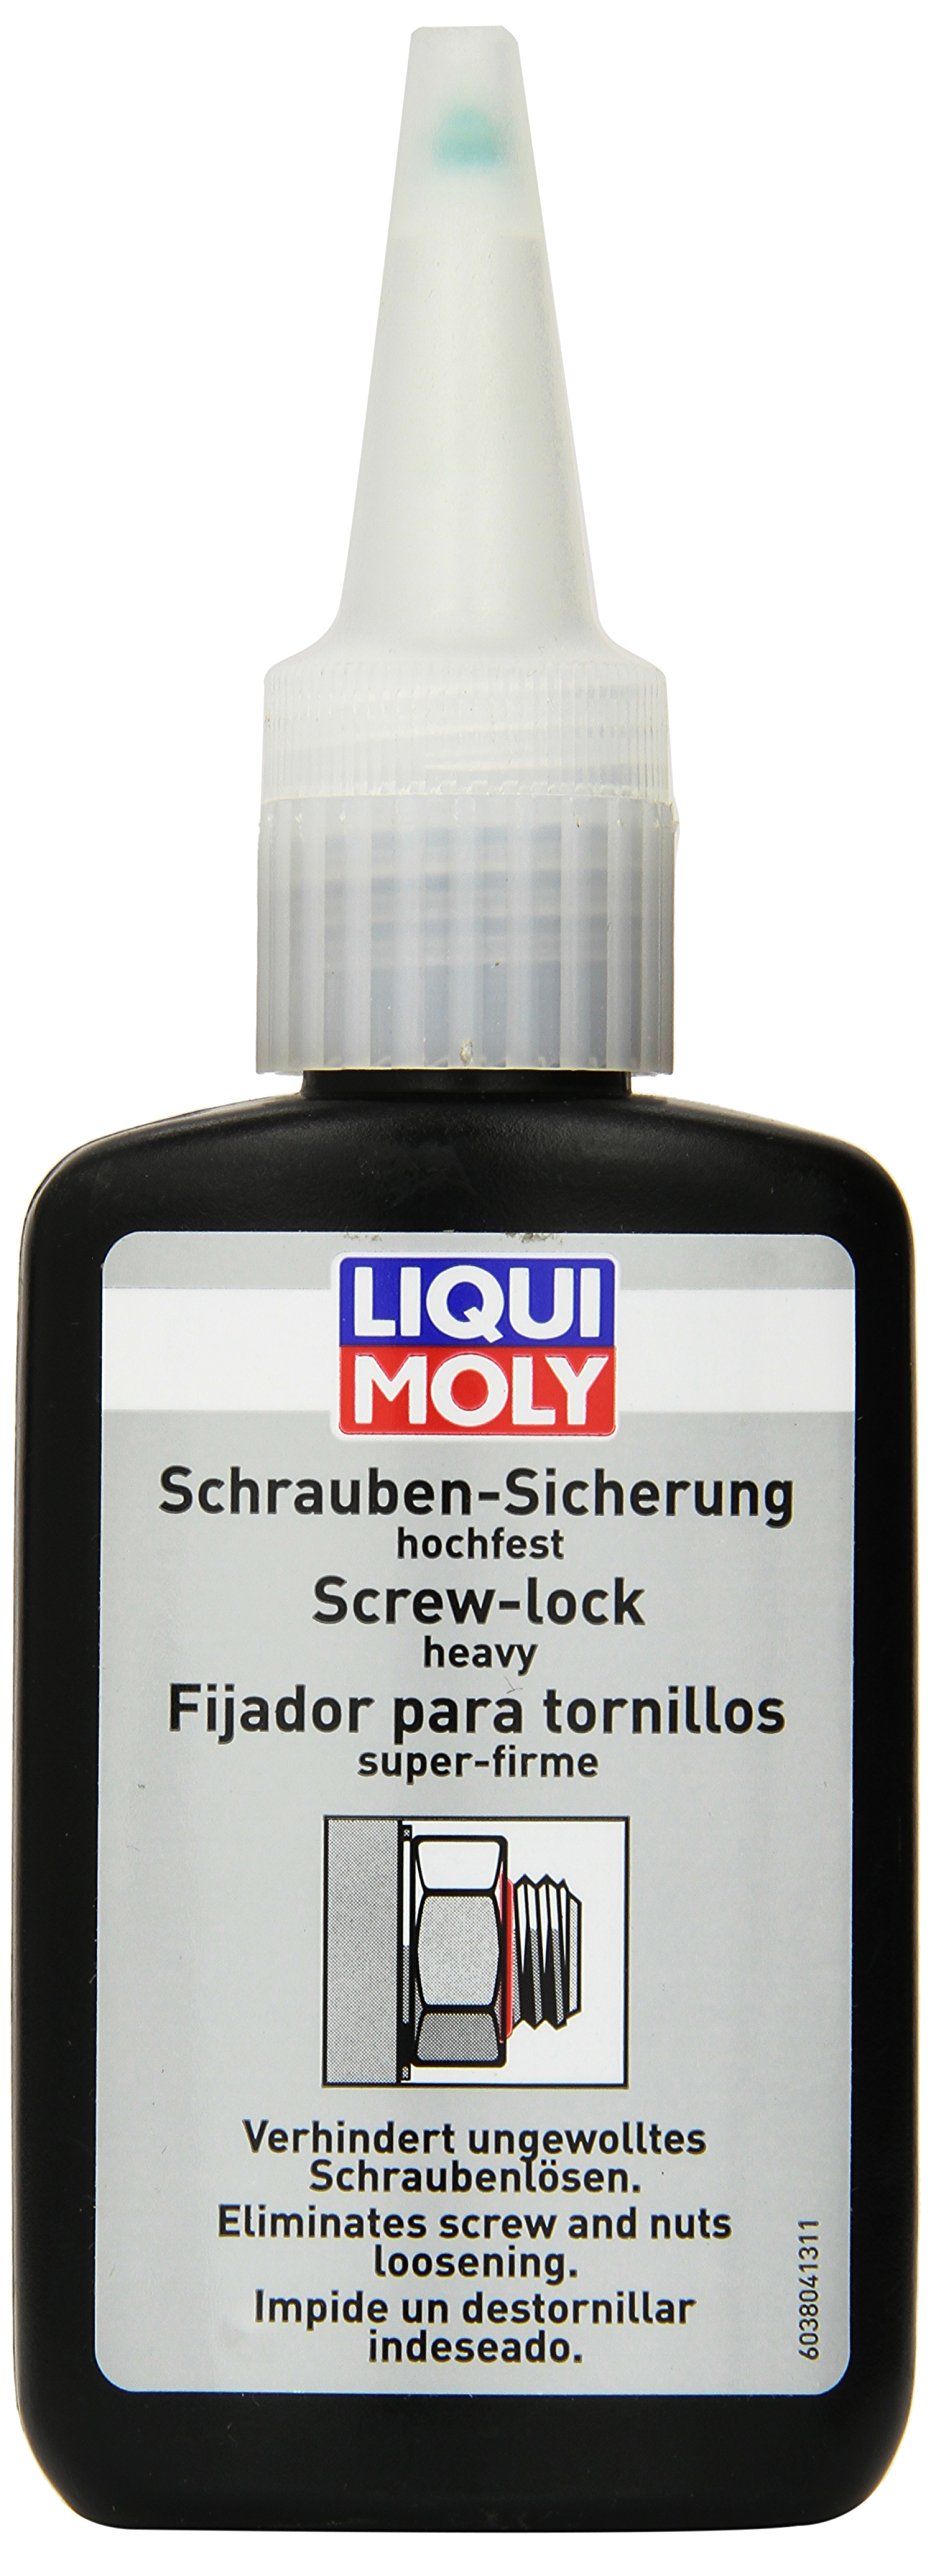 LIQUI MOLY Schraubensicherung hochfest | 50 g | Schraubensicherung | Art.-Nr.: 3804 von Liqui Moly